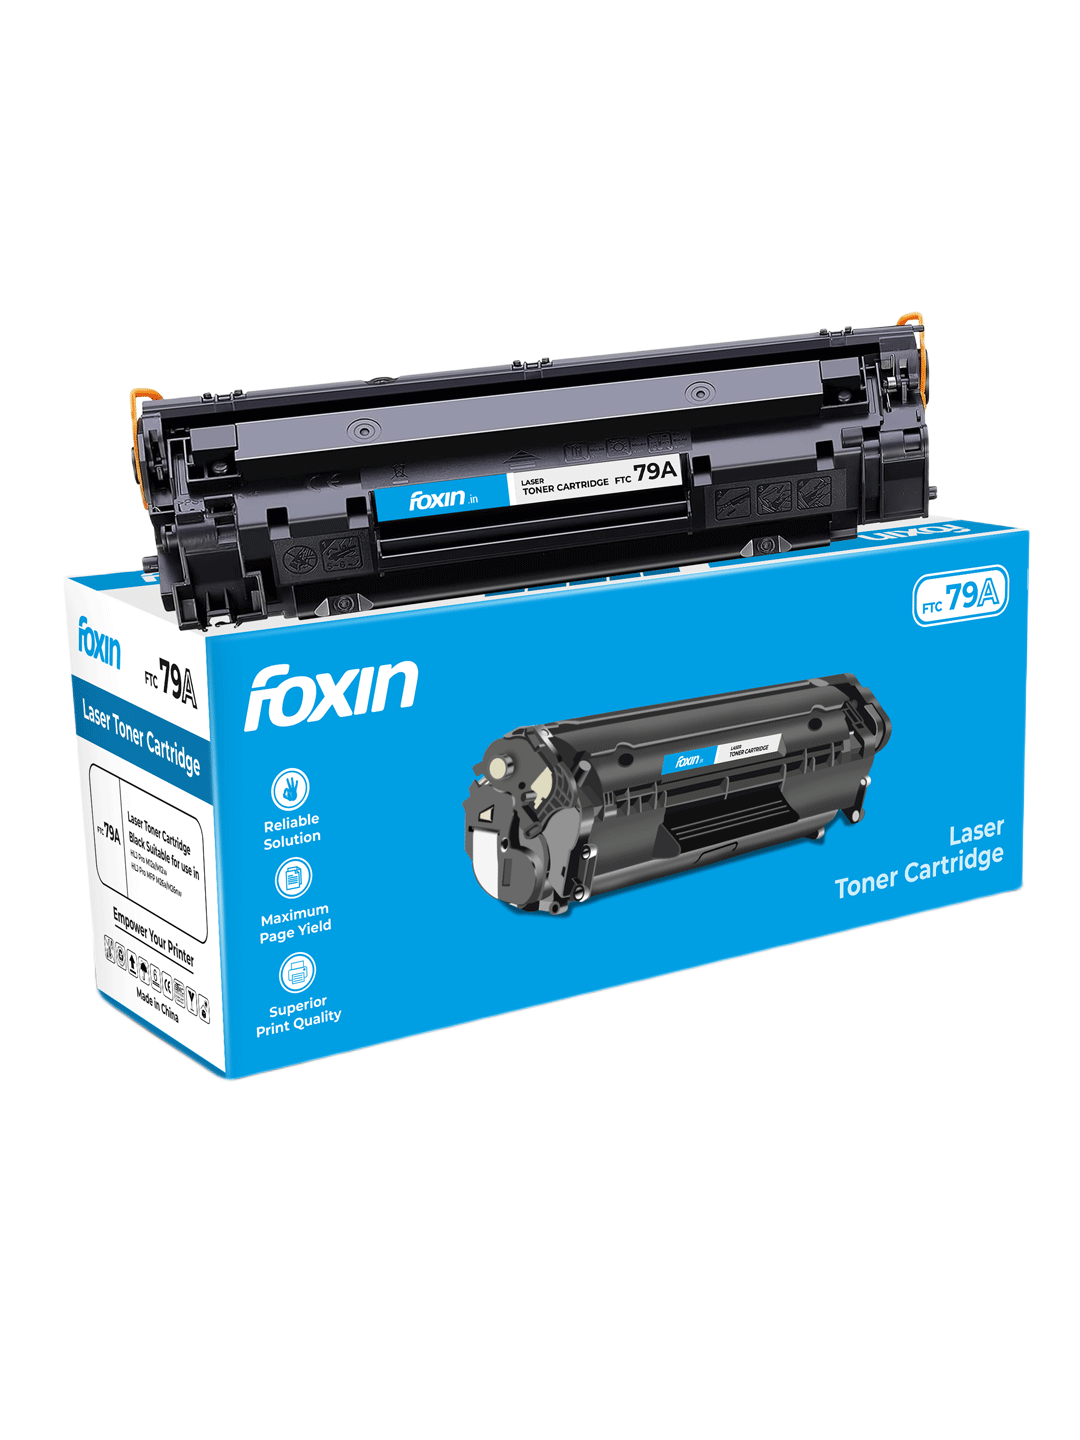 Foxin FTC 79A/ CF279A Black Toner Cartridge for HP Laserjet Pro M12a, M12w, HP Laserjet Pro MFP M26A, M26NW, Laserjet Pro M12A, HP Laser Jet M12